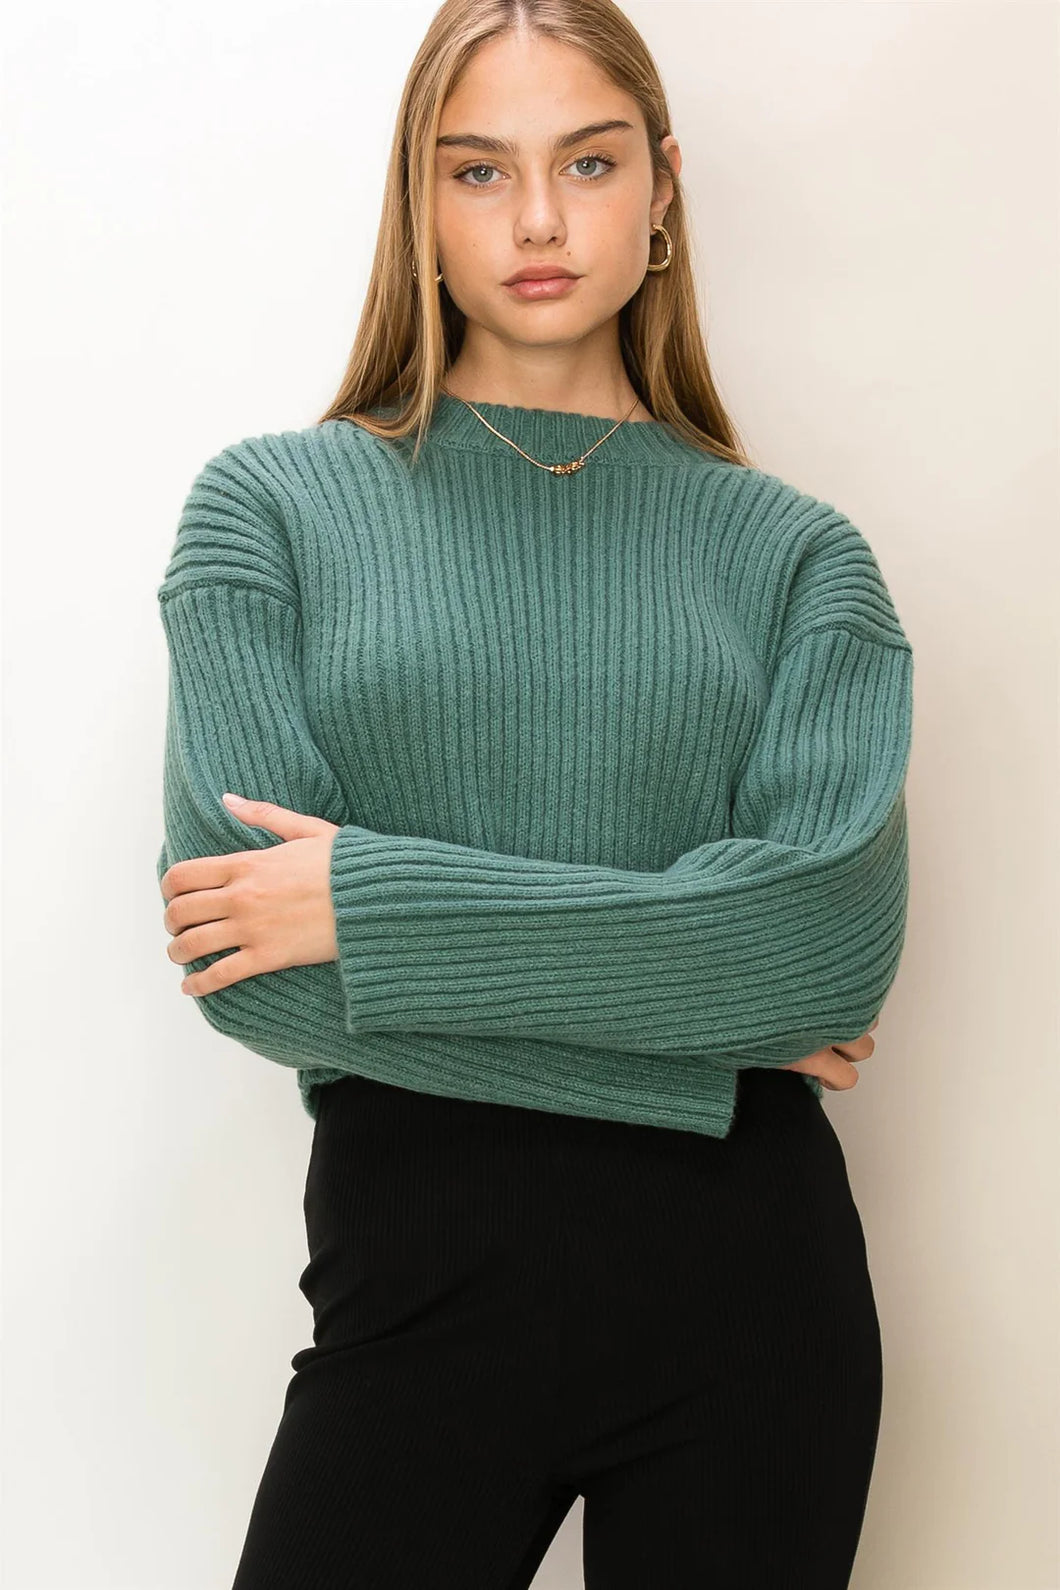 Sweetie Crop Sweater